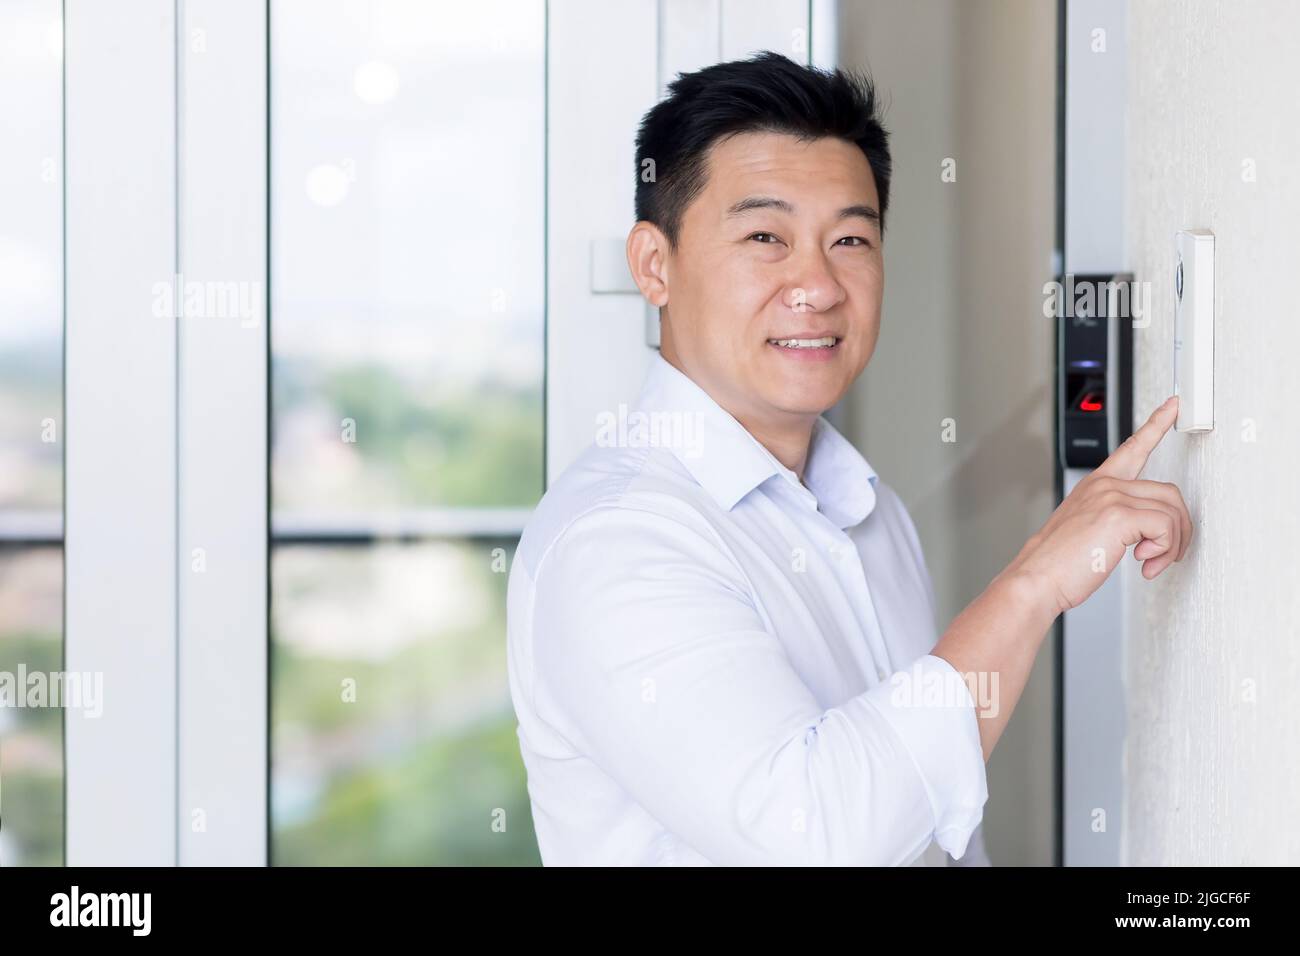 Porträt des asiatischen Geschäftsmannes, der Mann tritt in ein modernes Büro, verwendet eine Türklingel mit Fingerabdruckschloss, der Mann blickt auf die Kamera und lächelt Stockfoto